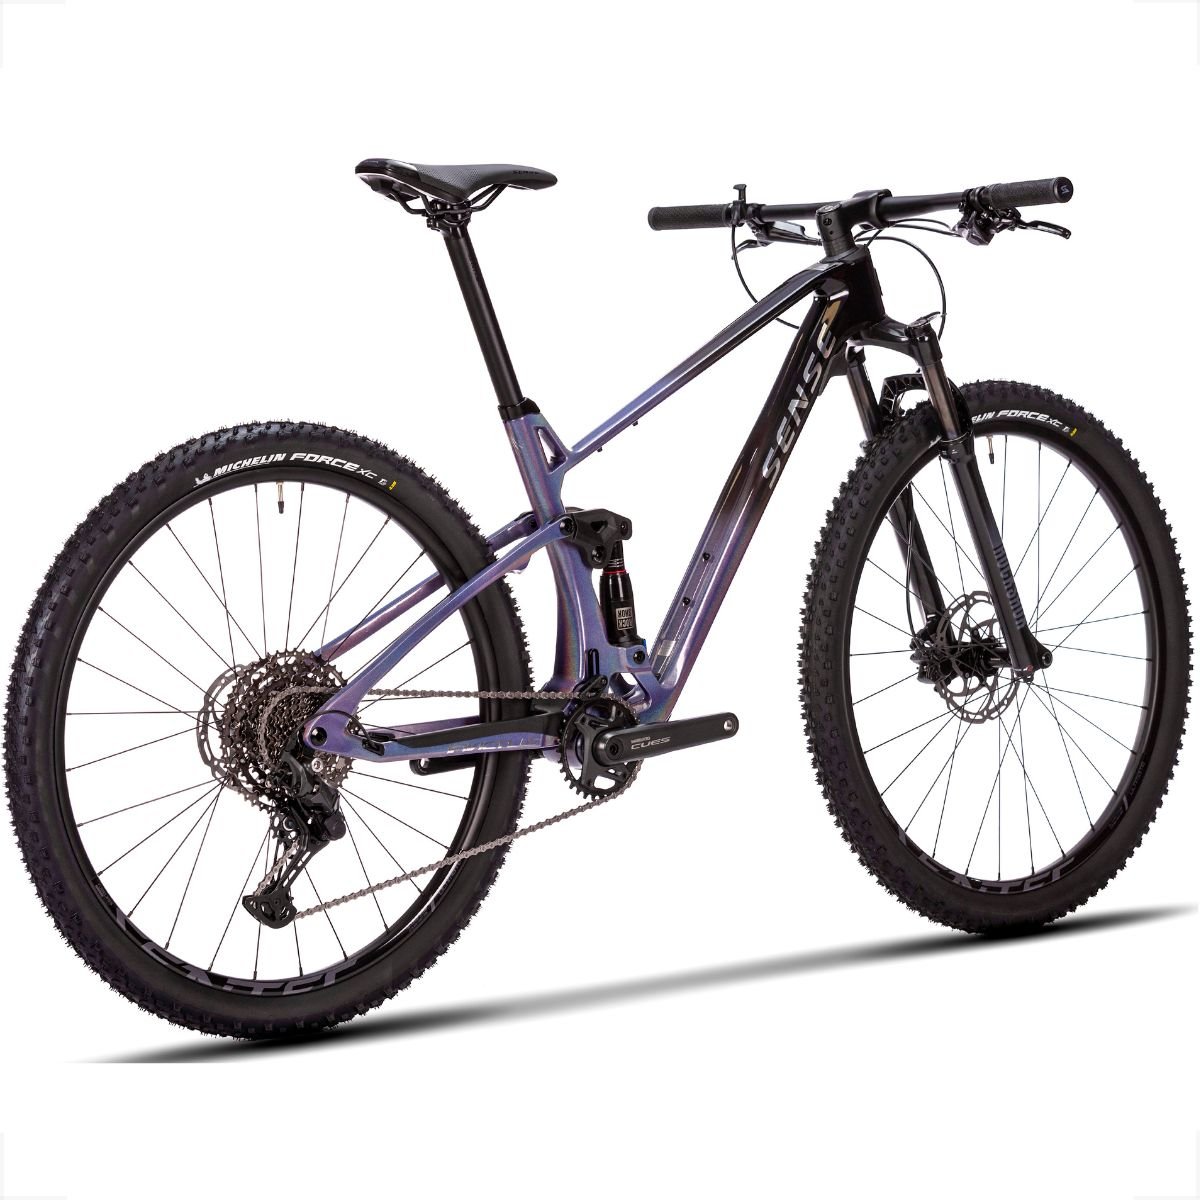 Bicicleta Full Sense Invictus Sport Carbono Shimano Cues:roxo+preto/19 - 3